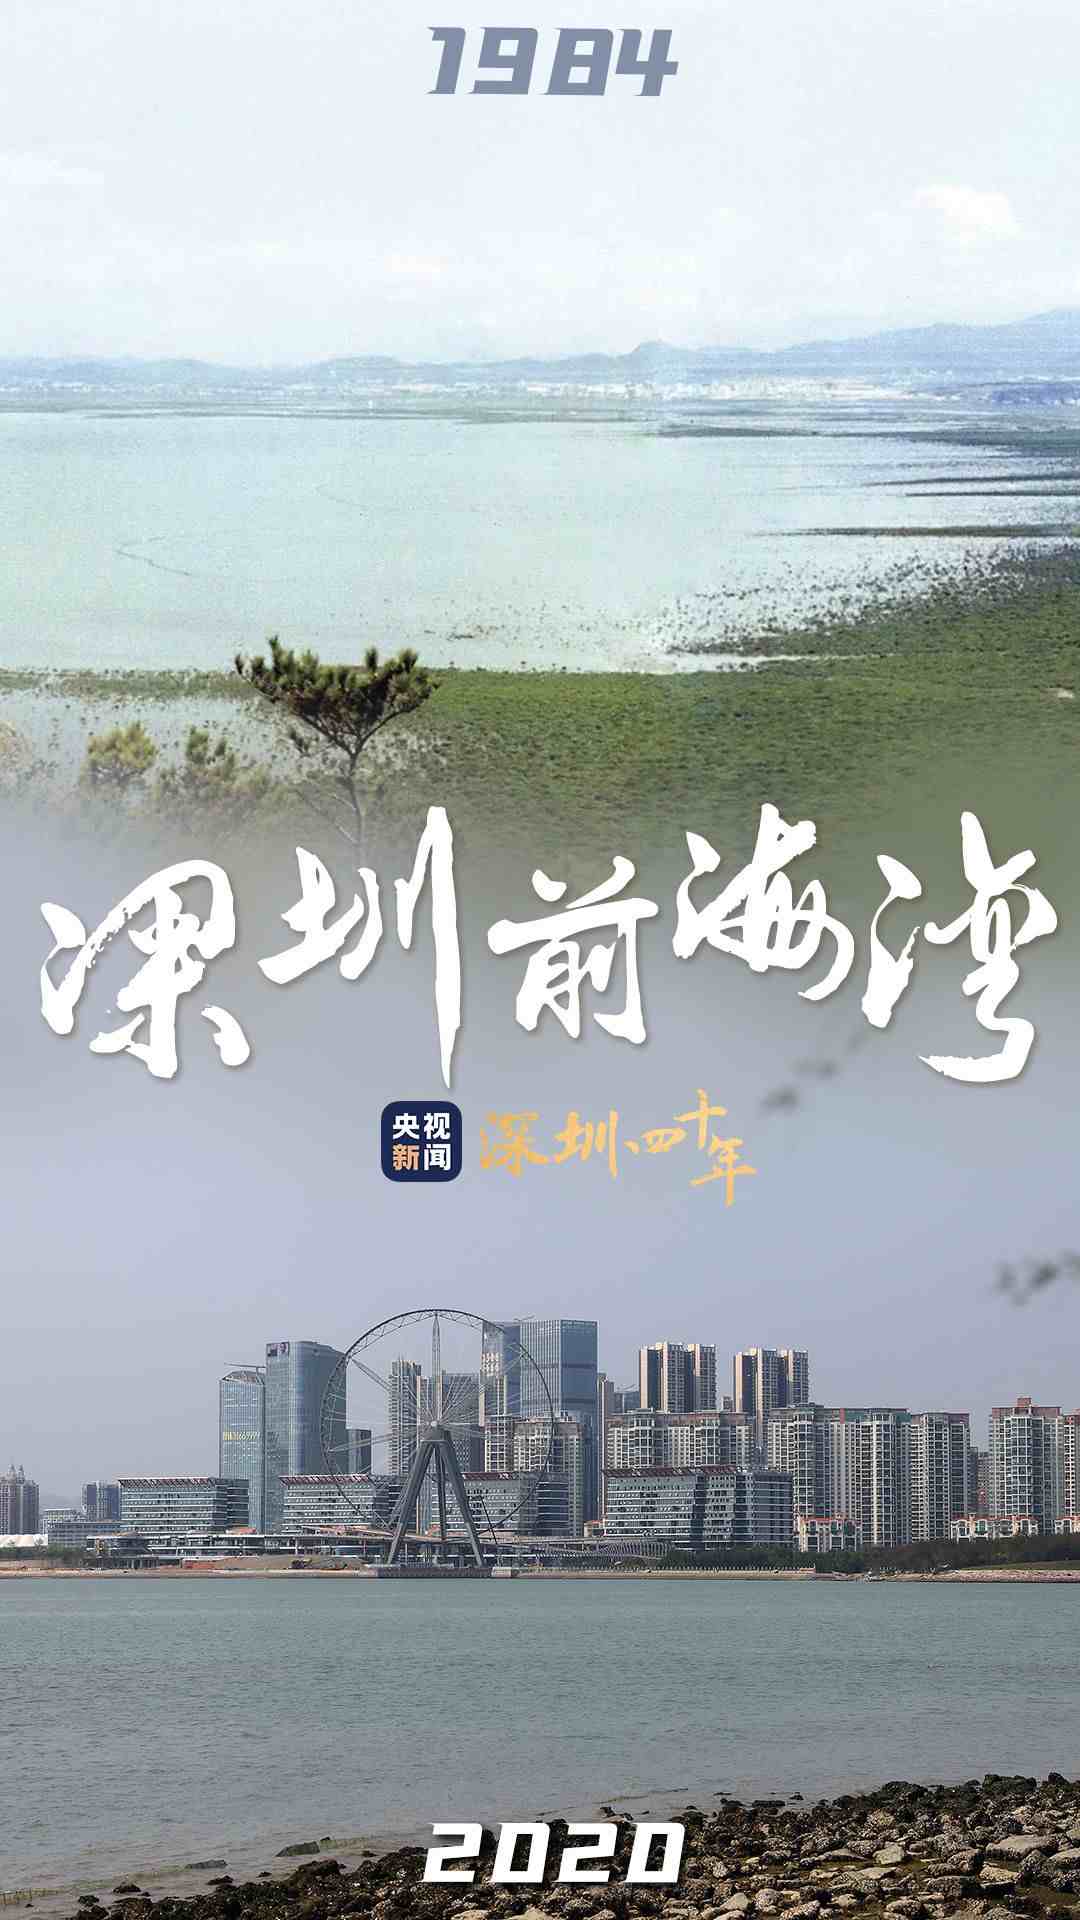 四十不惑 历“9”弥新 图览深圳经济特区40年沧海桑田